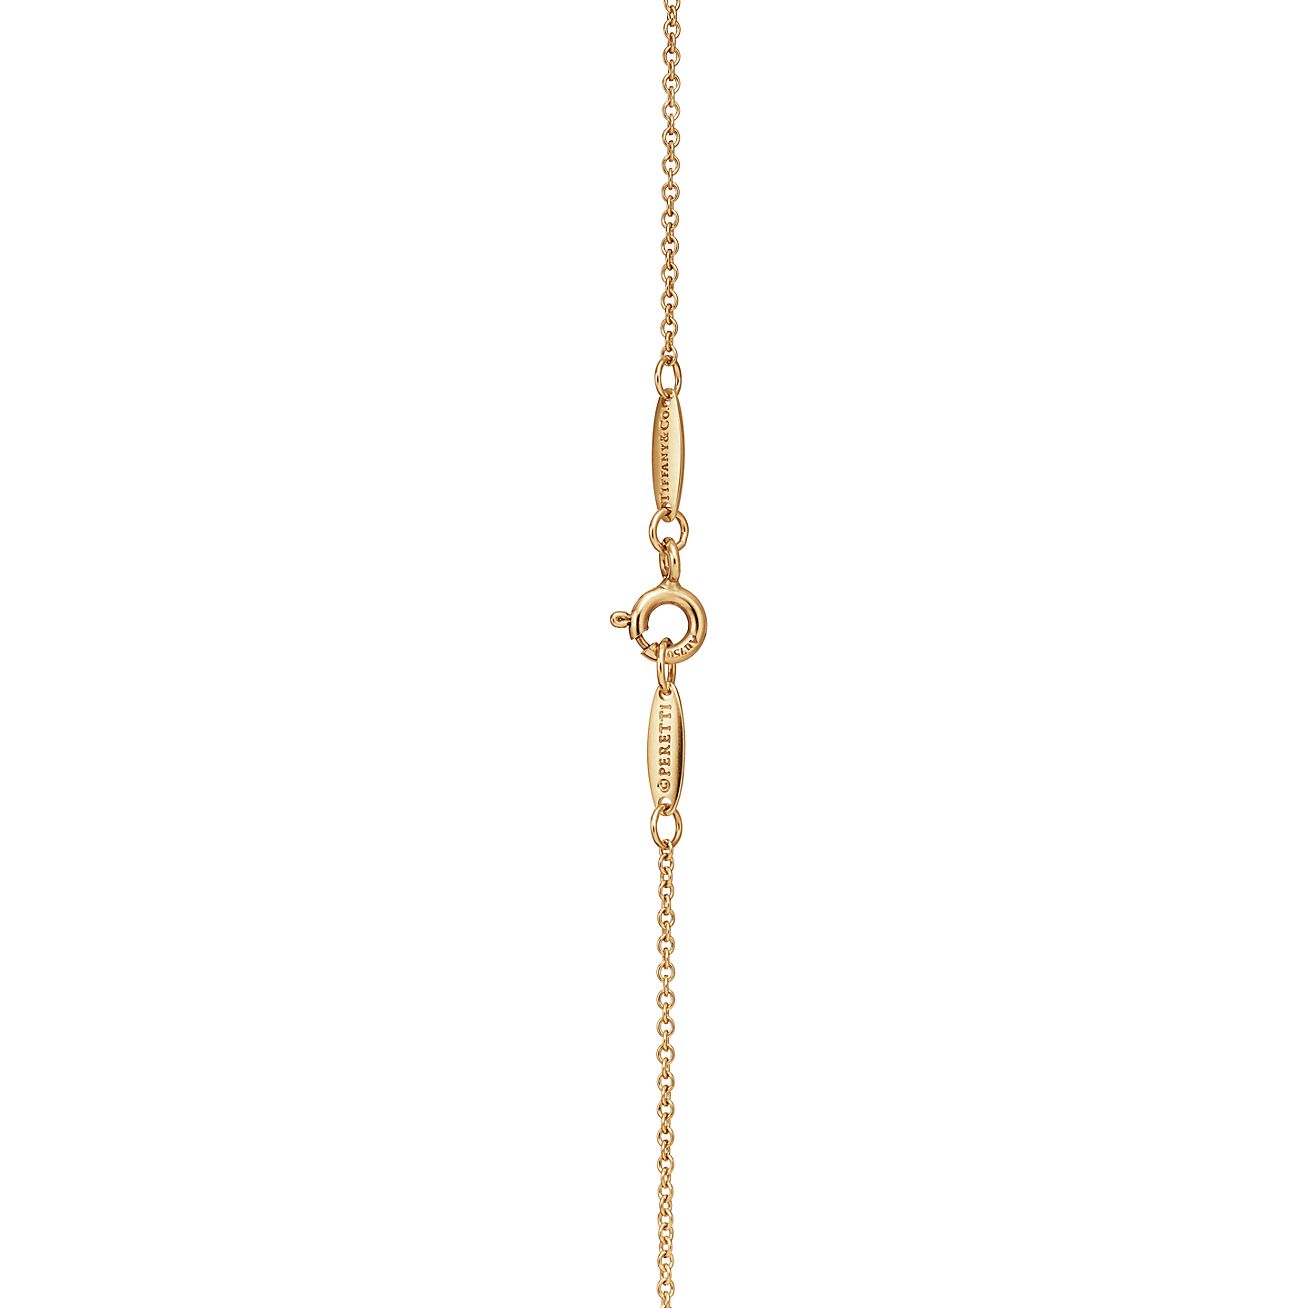 Elsa Peretti™ Open Heart pendant in 18k gold with diamonds